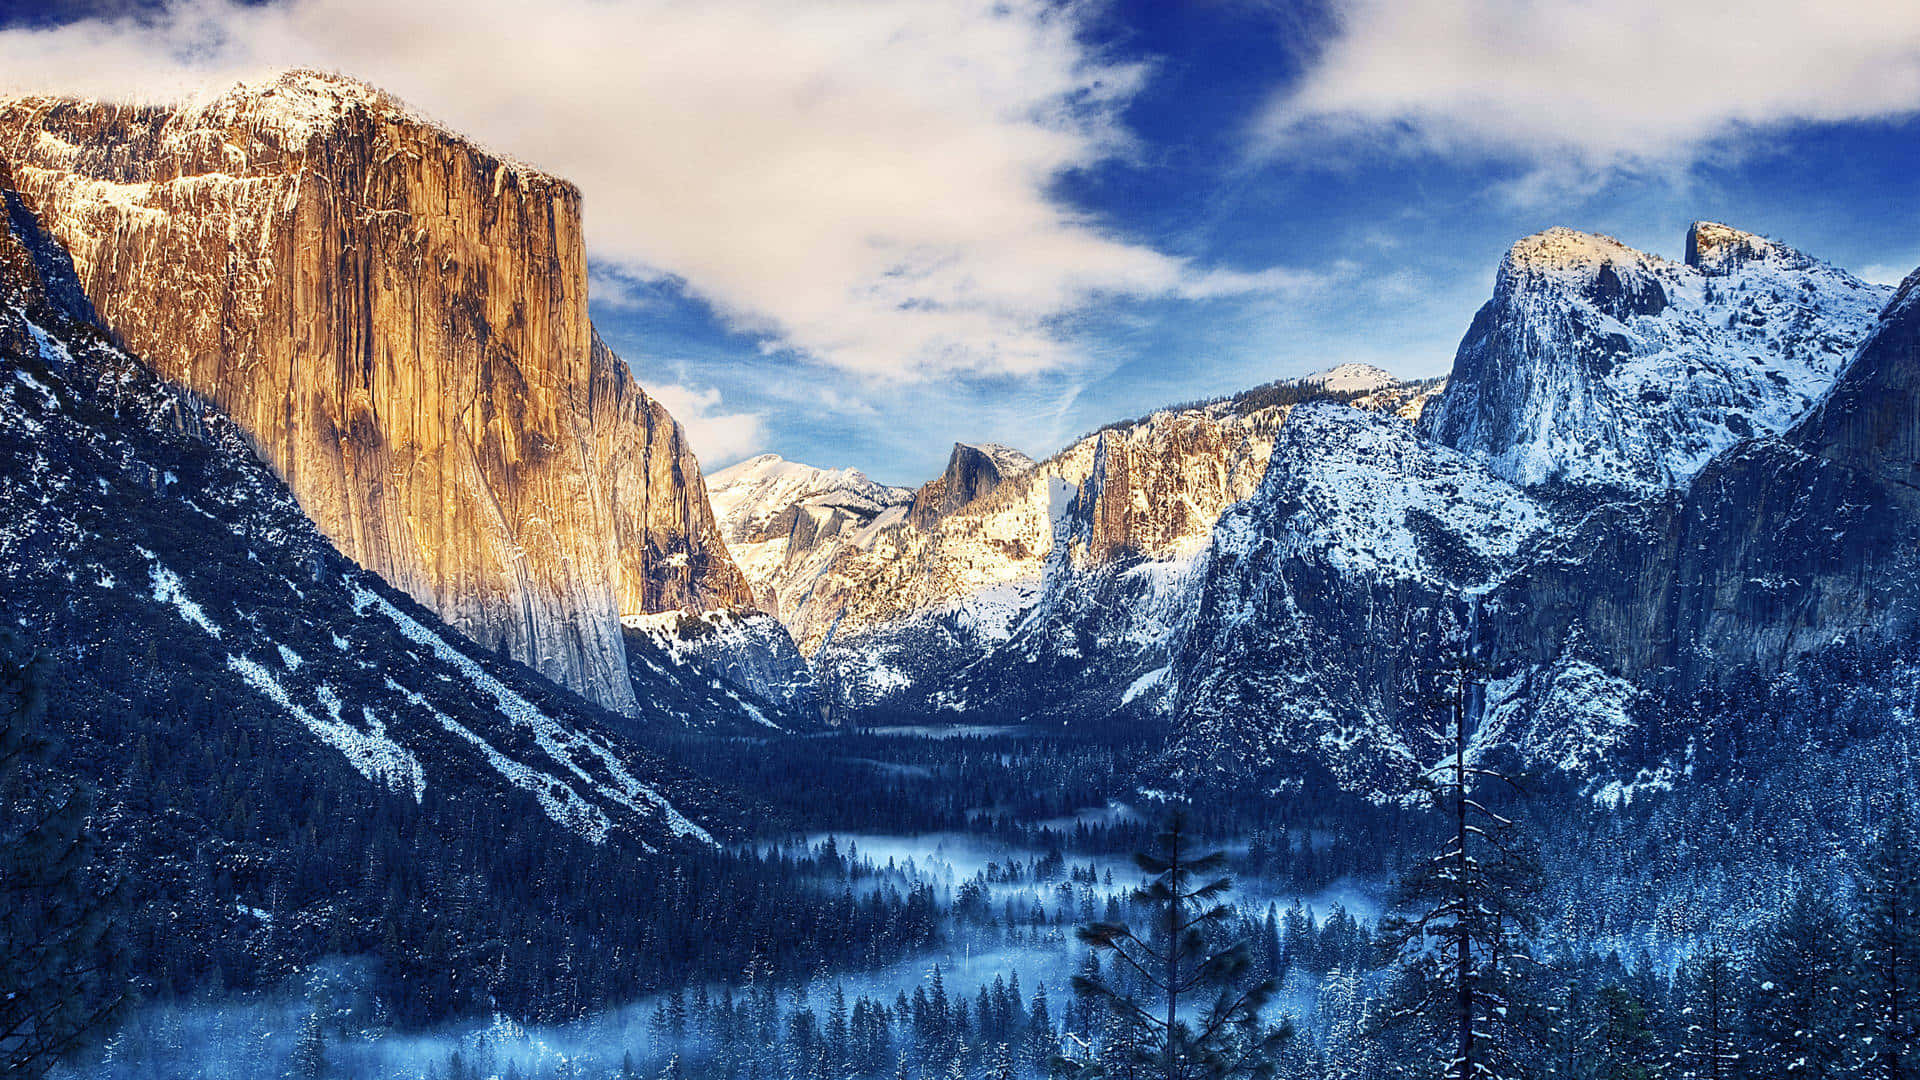 Integral Yosemite Falls Wallpaper